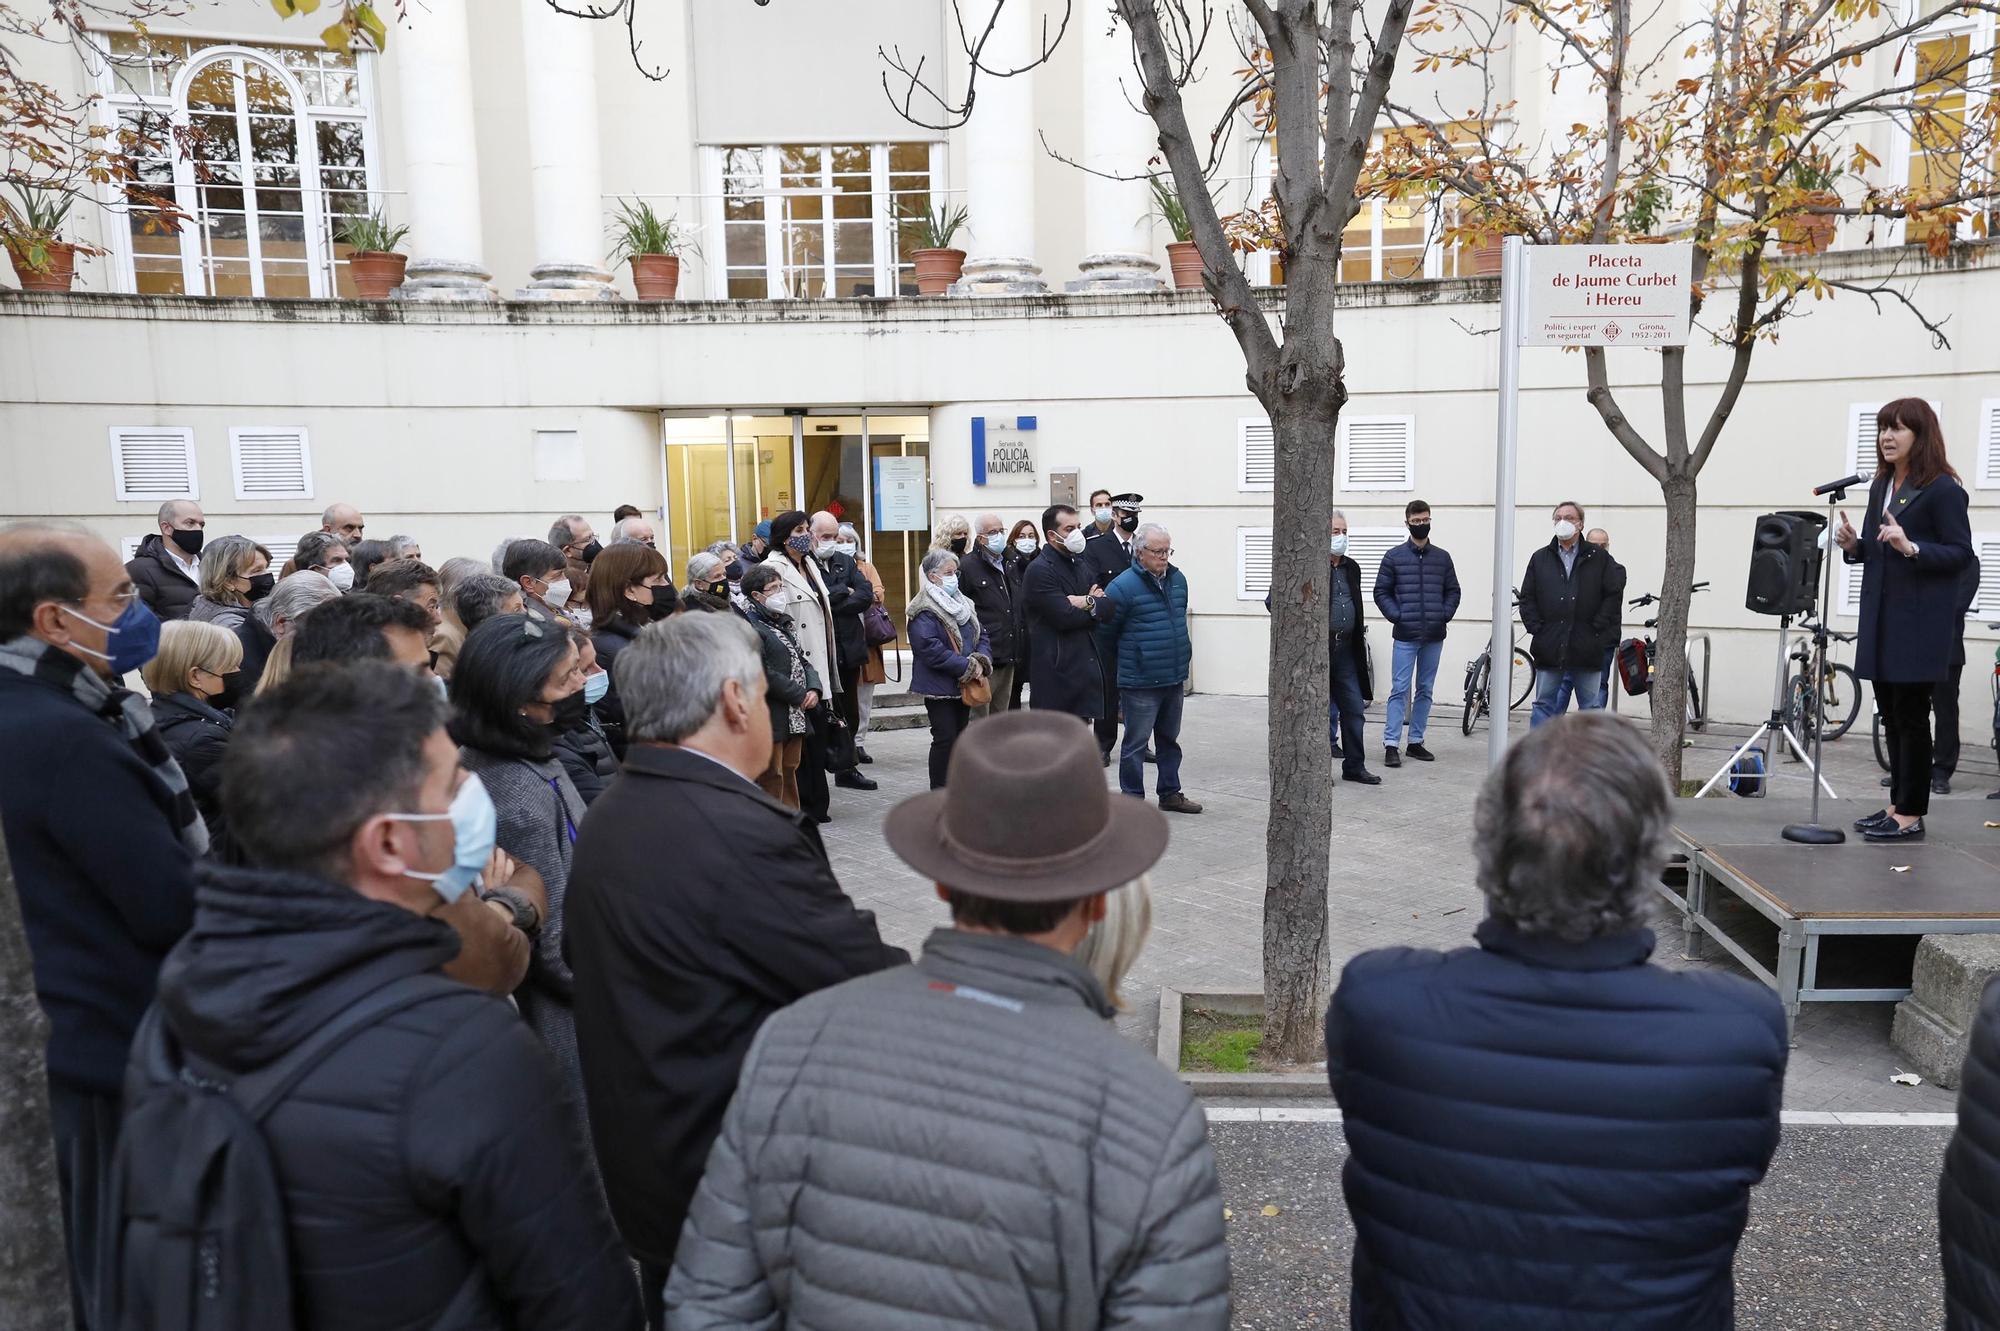 Girona homenatja el polític i expert en seguretat Jaume Curbet amb una placeta